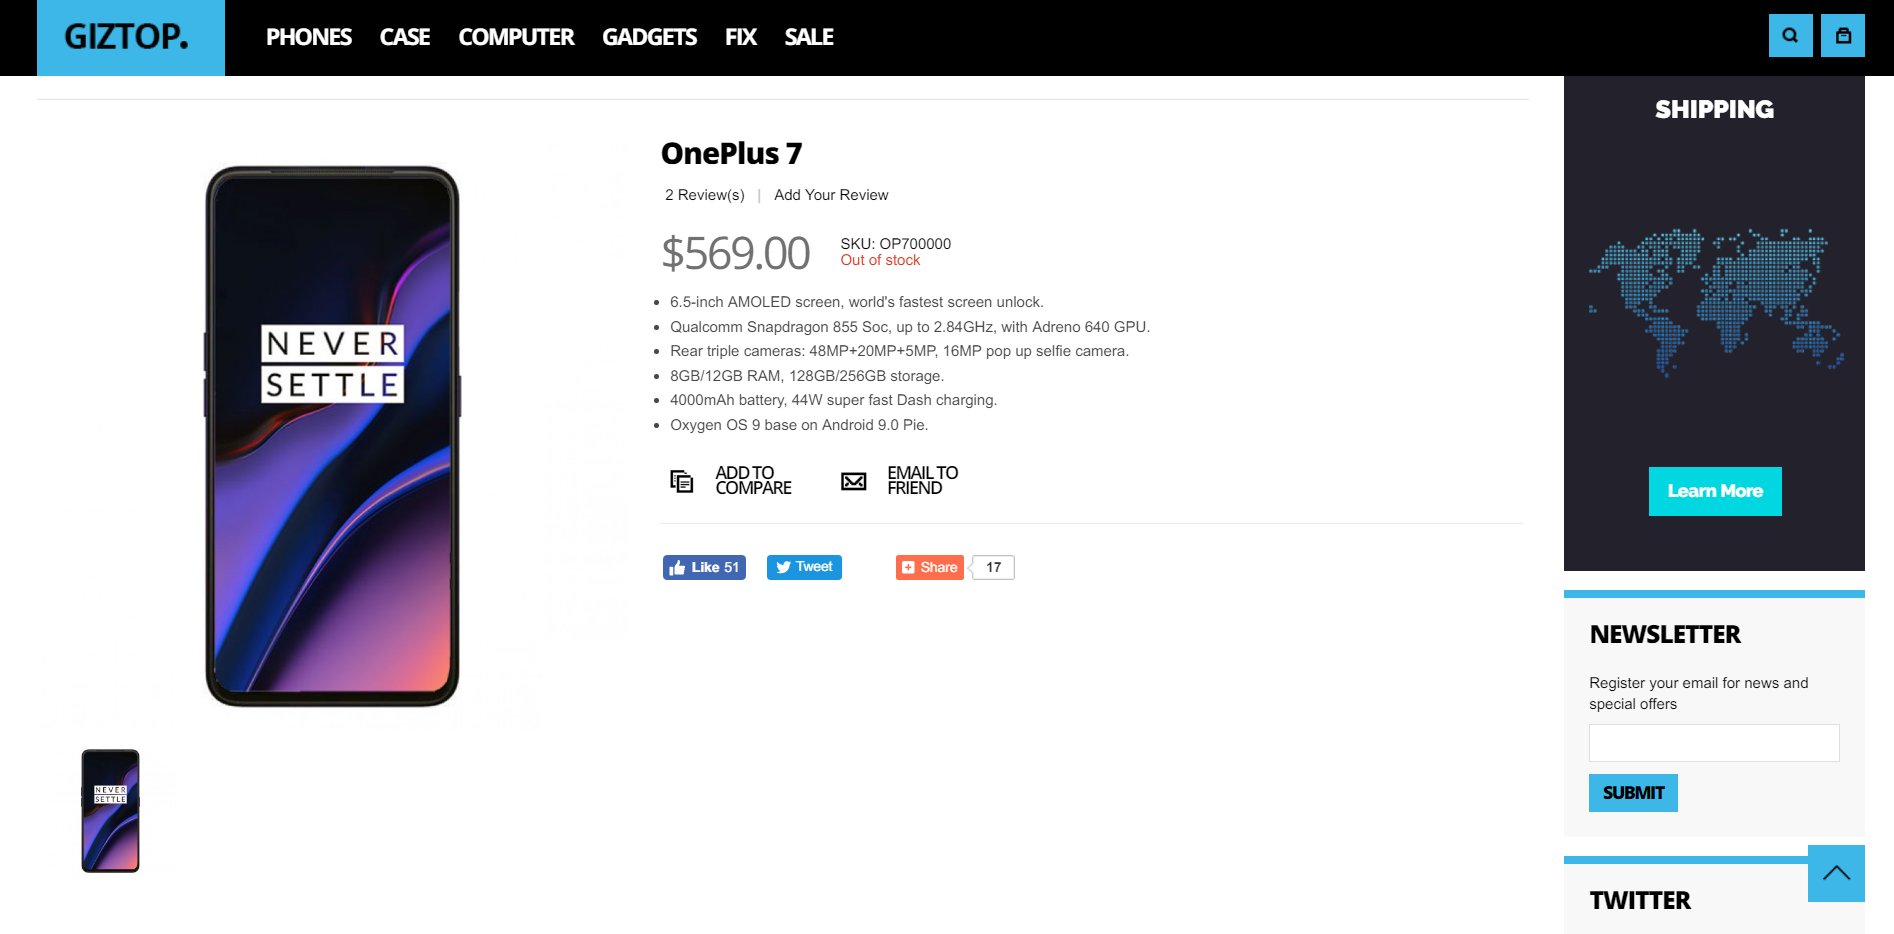 Rò rỉ giá bán và thông số của OnePlus 7 trên website bán lẻ trực tuyến